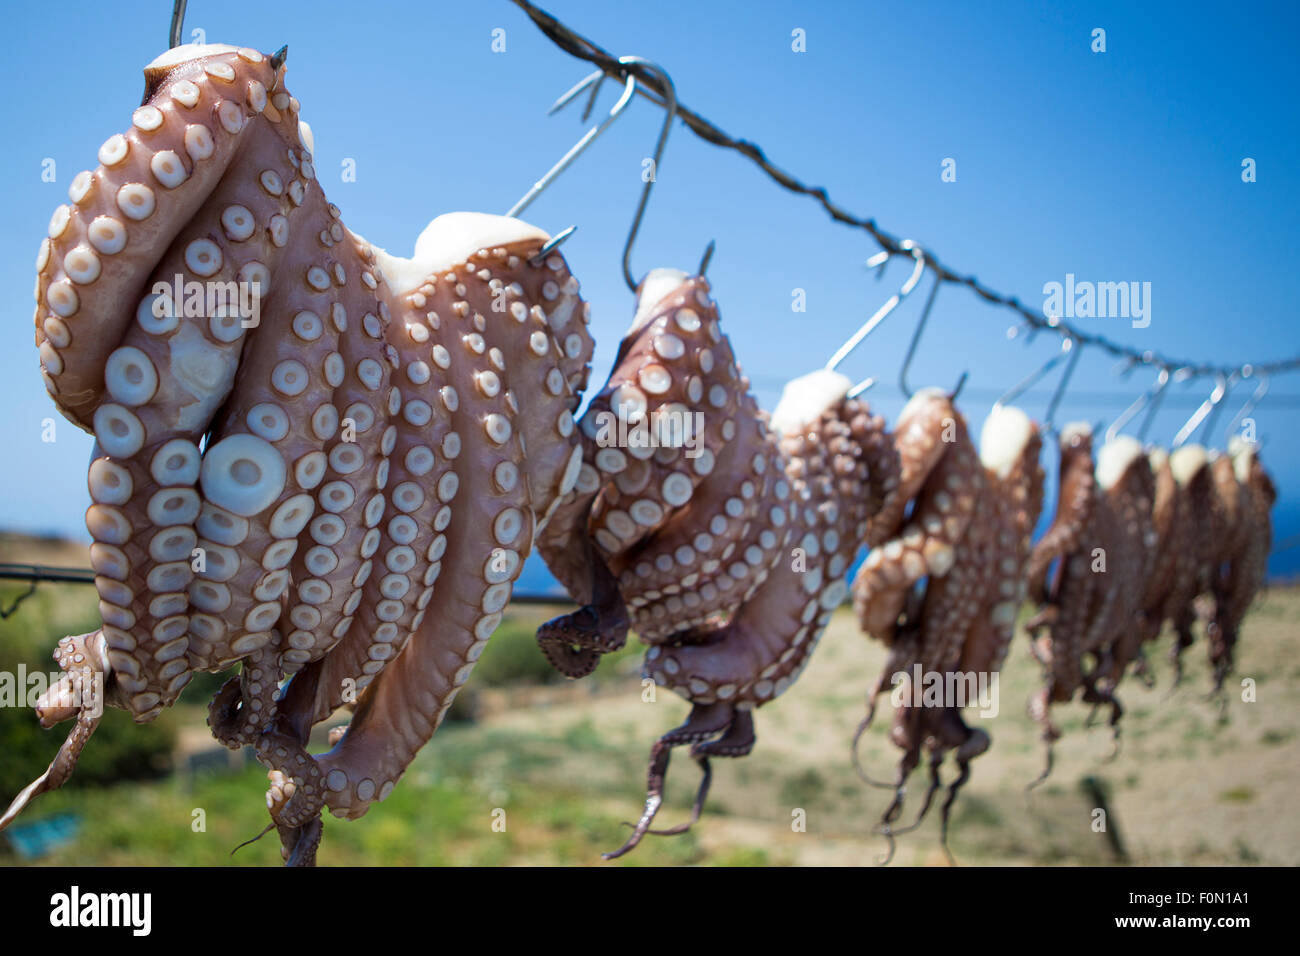 Origano sfregata tentacoli di polpo di essiccazione al sole al di fuori delle taverne sul mare sono sorprendentemente una visione comune in Grecia Foto Stock